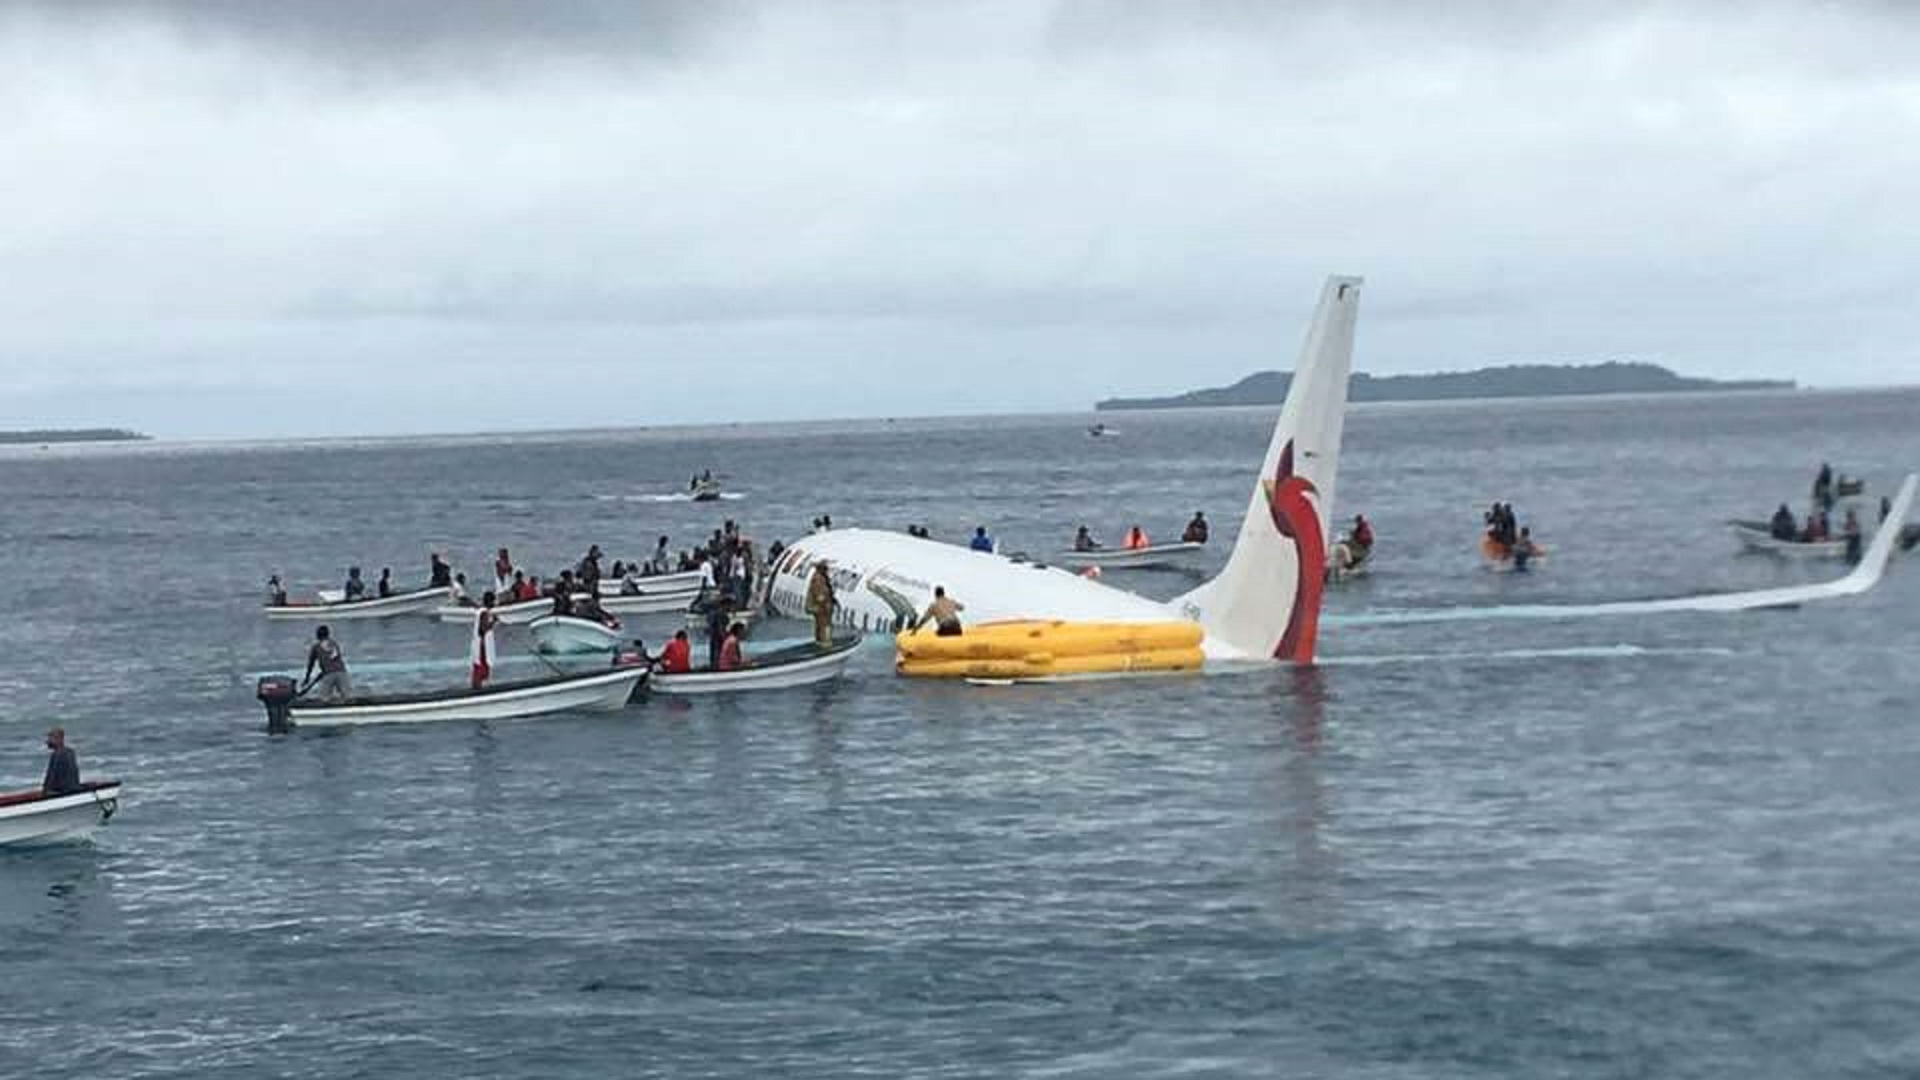 PX overshot runway into Chuuk Lagoon upon landing in FSM - EMTV Online